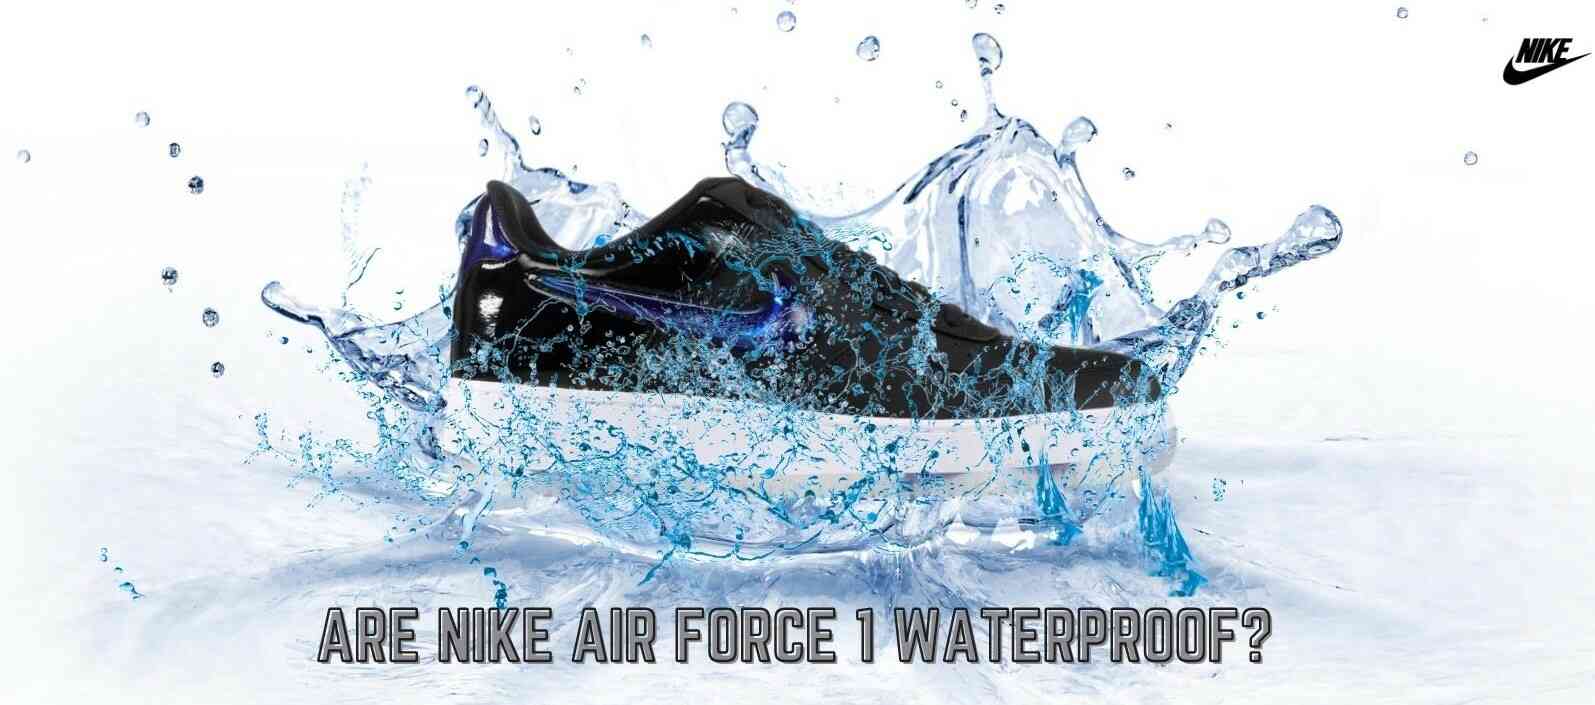 Are Nike Air Force 1 waterproof?